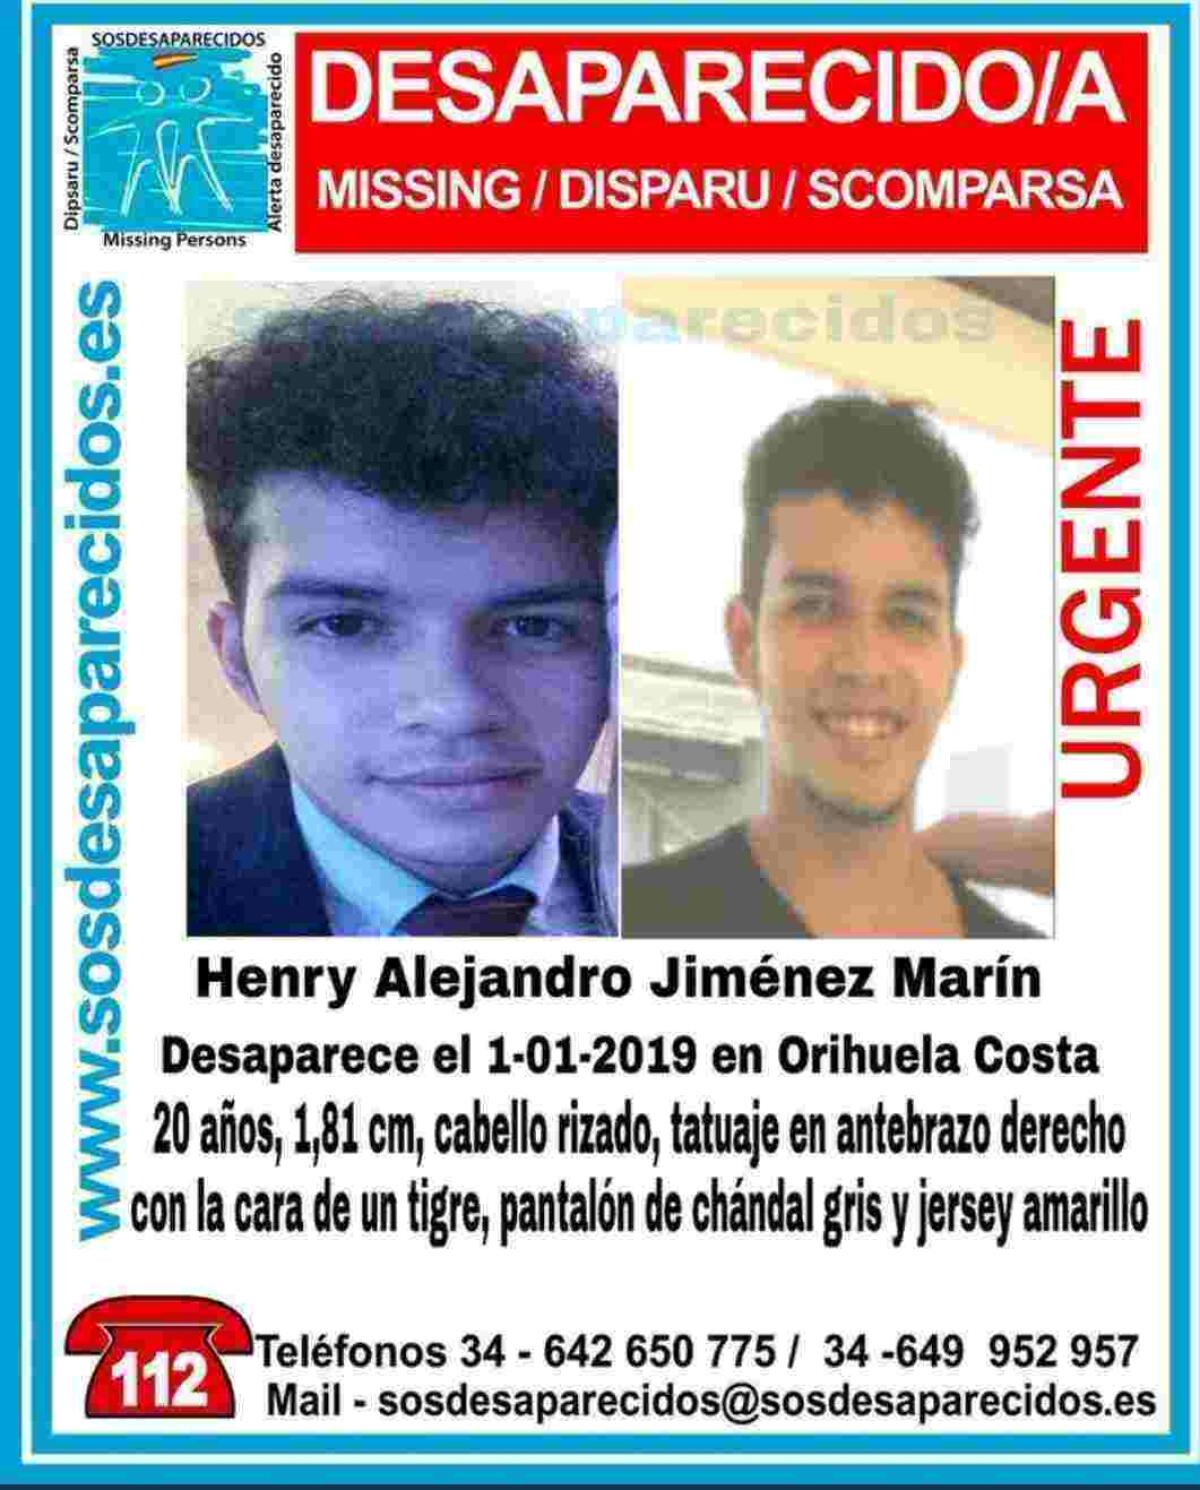 La Guardia Civil continúa con la búsqueda del joven de 20 años desaparecido en Orihuela Costa